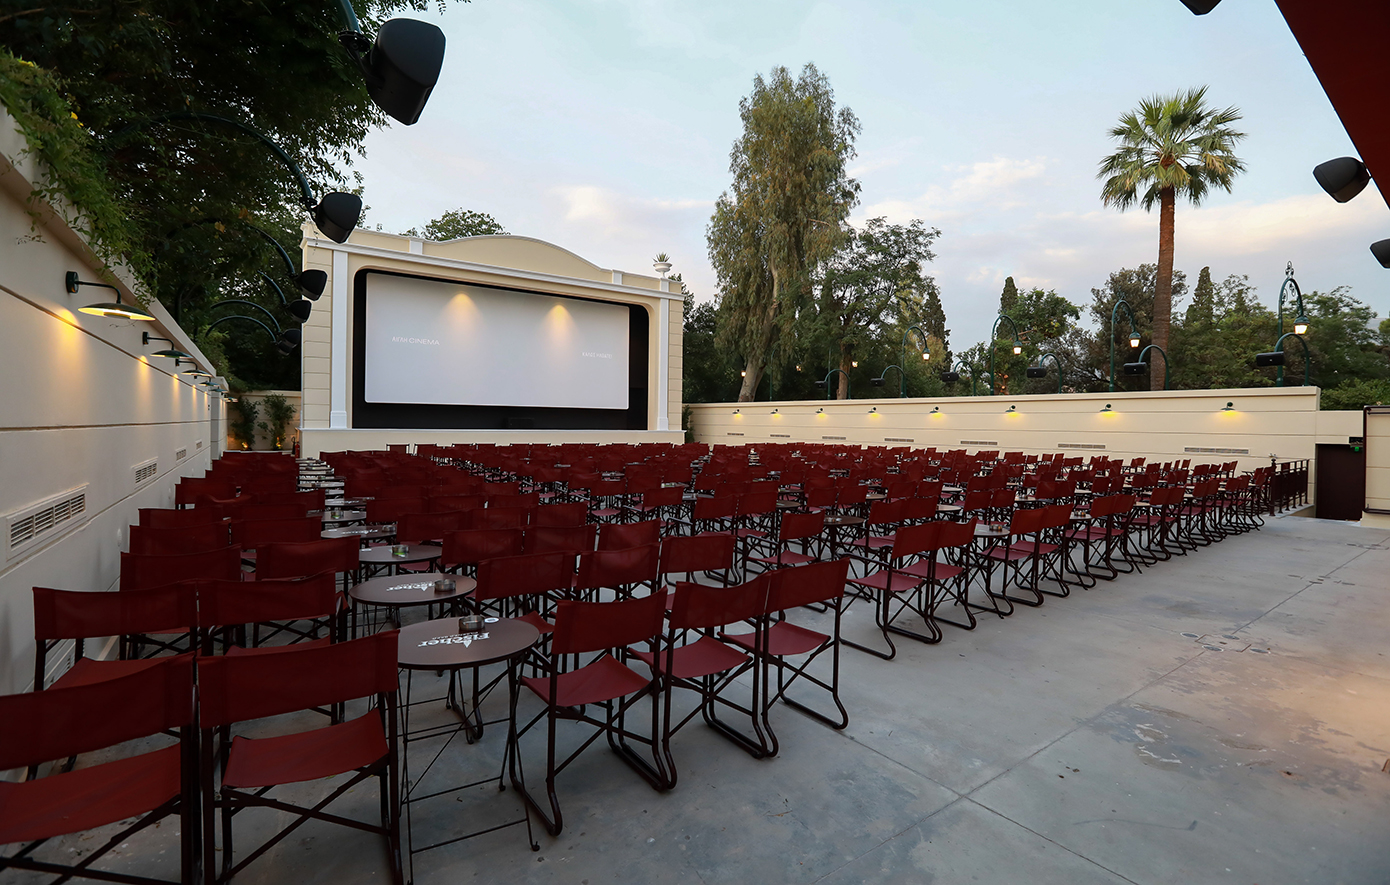 Αίγλη Cinema: Το ιστορικό θερινό σινεμά του Ζαππείου επέστρεψε ανανεωμένο και γεμάτο αναμνήσεις